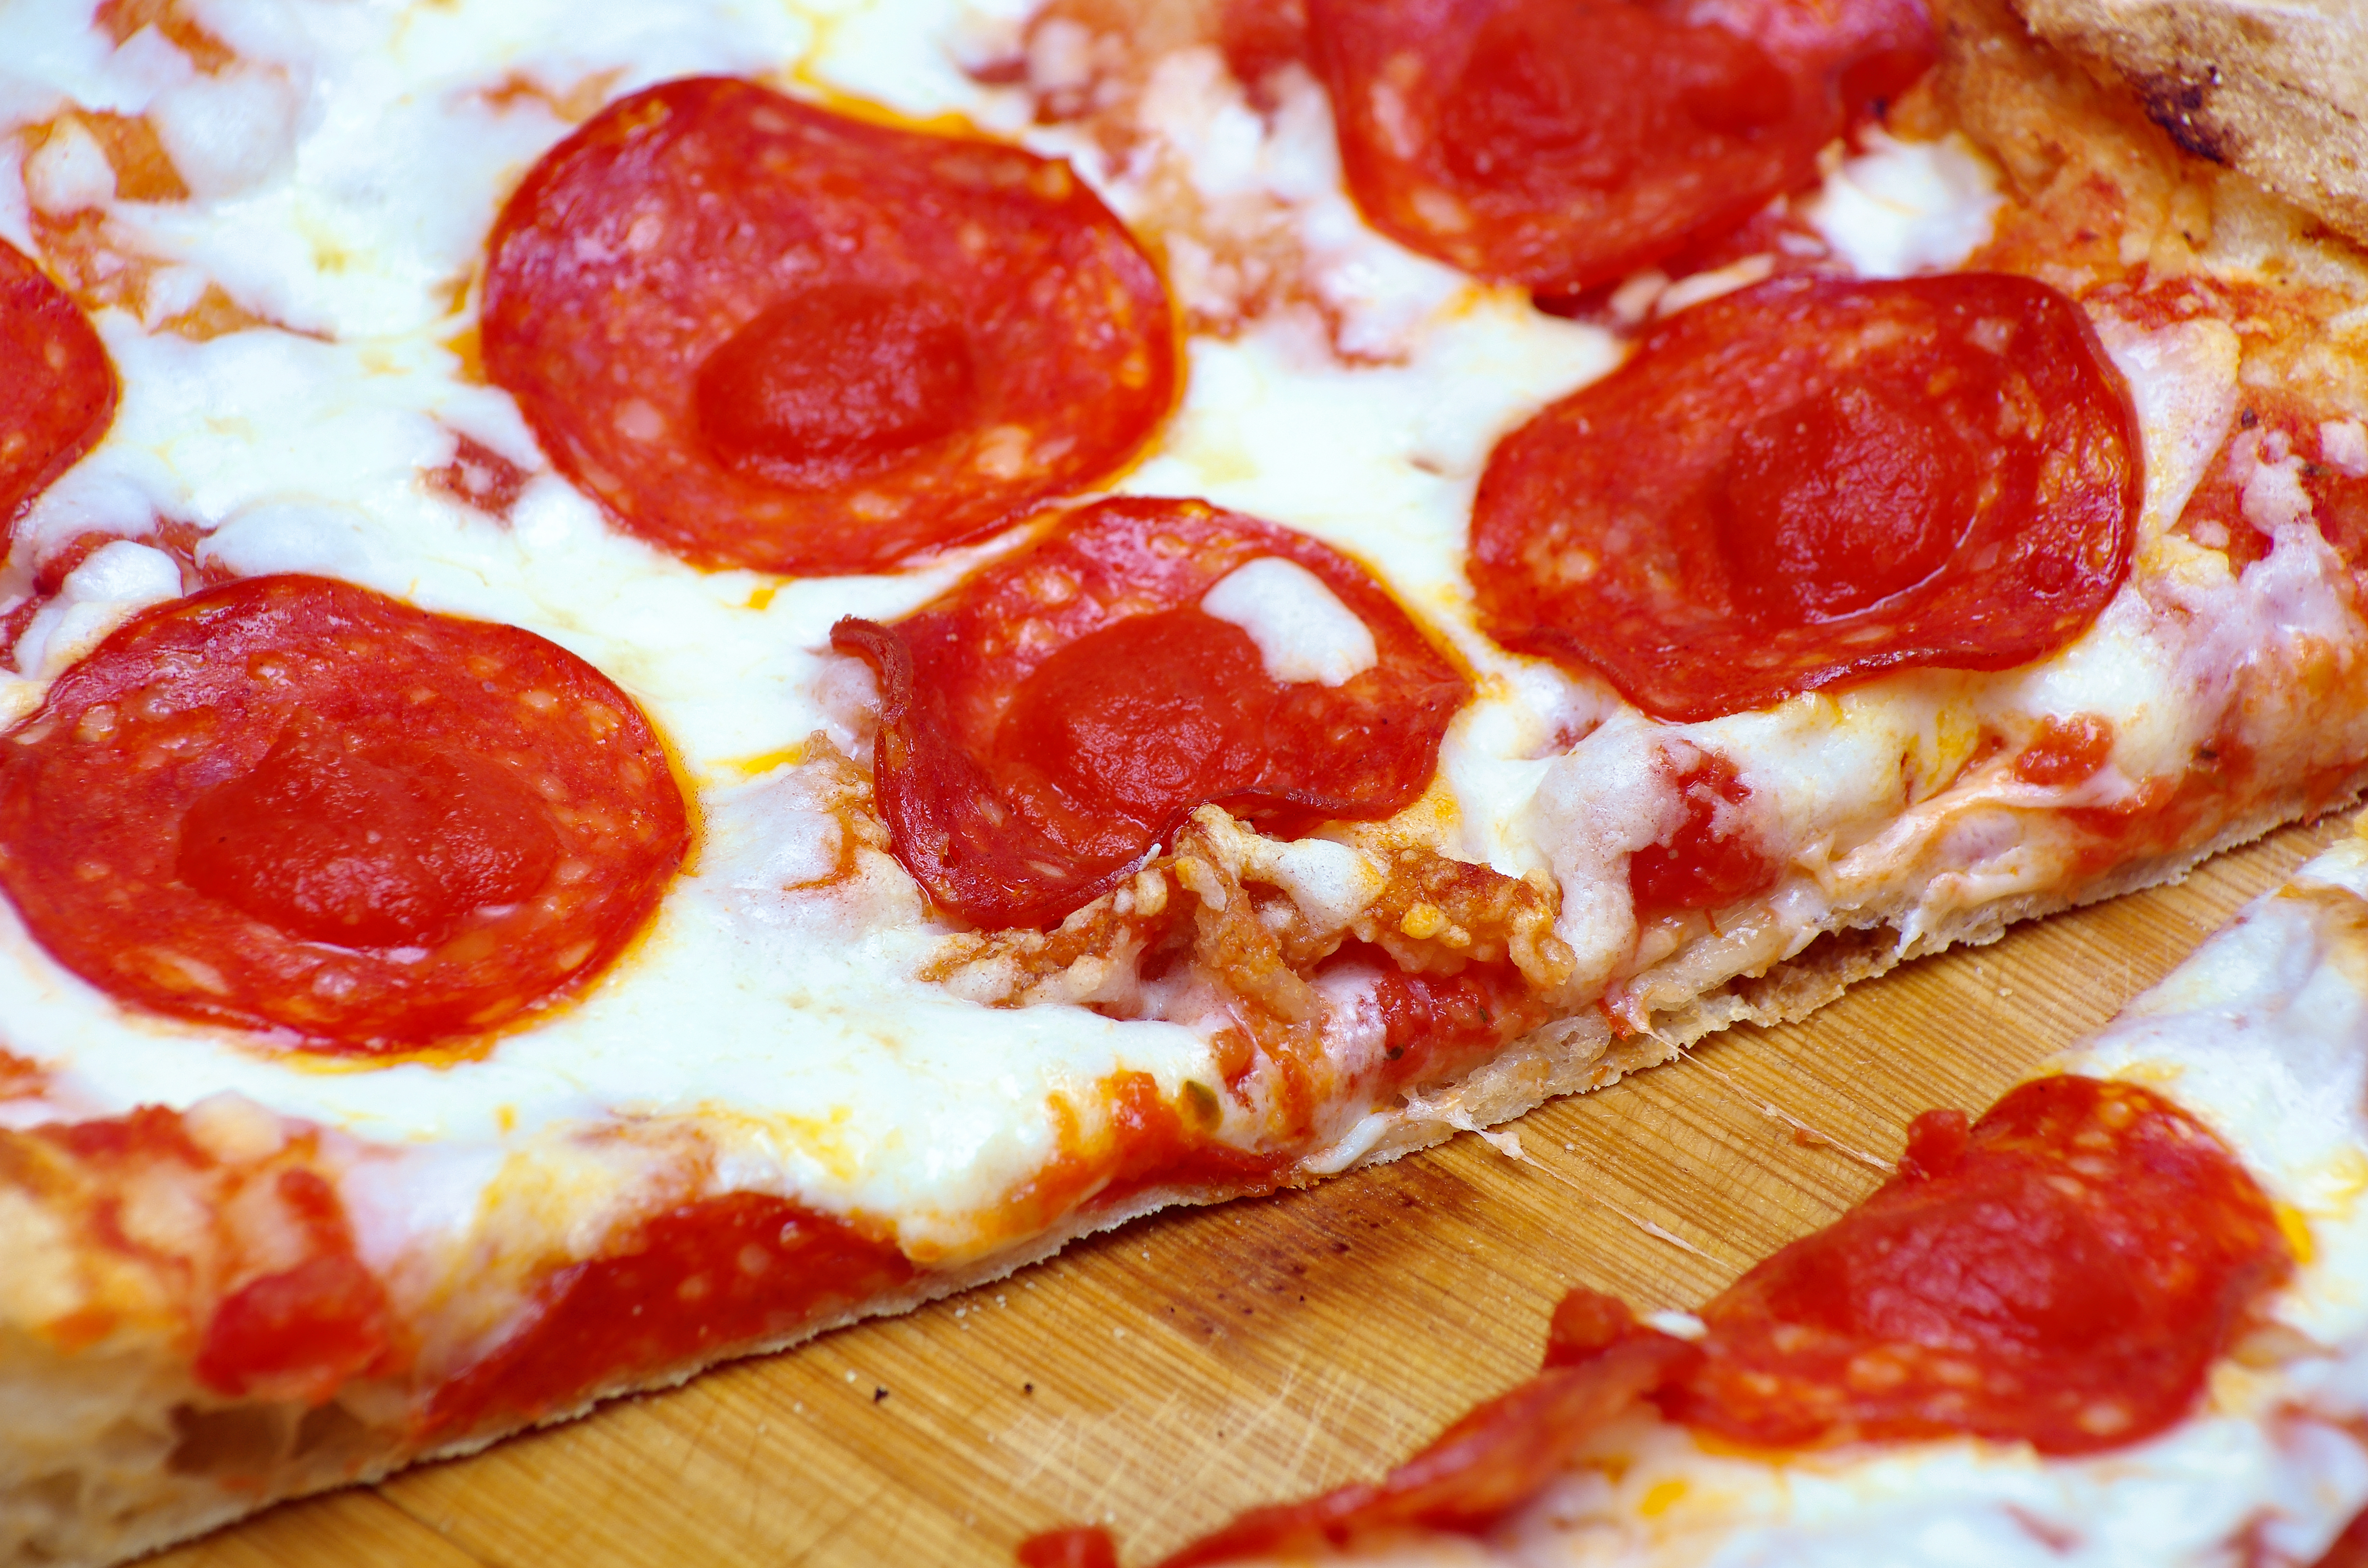 я хочу пиццу песто с пепперони и сосисками так же хочу другую с оливками фото 25